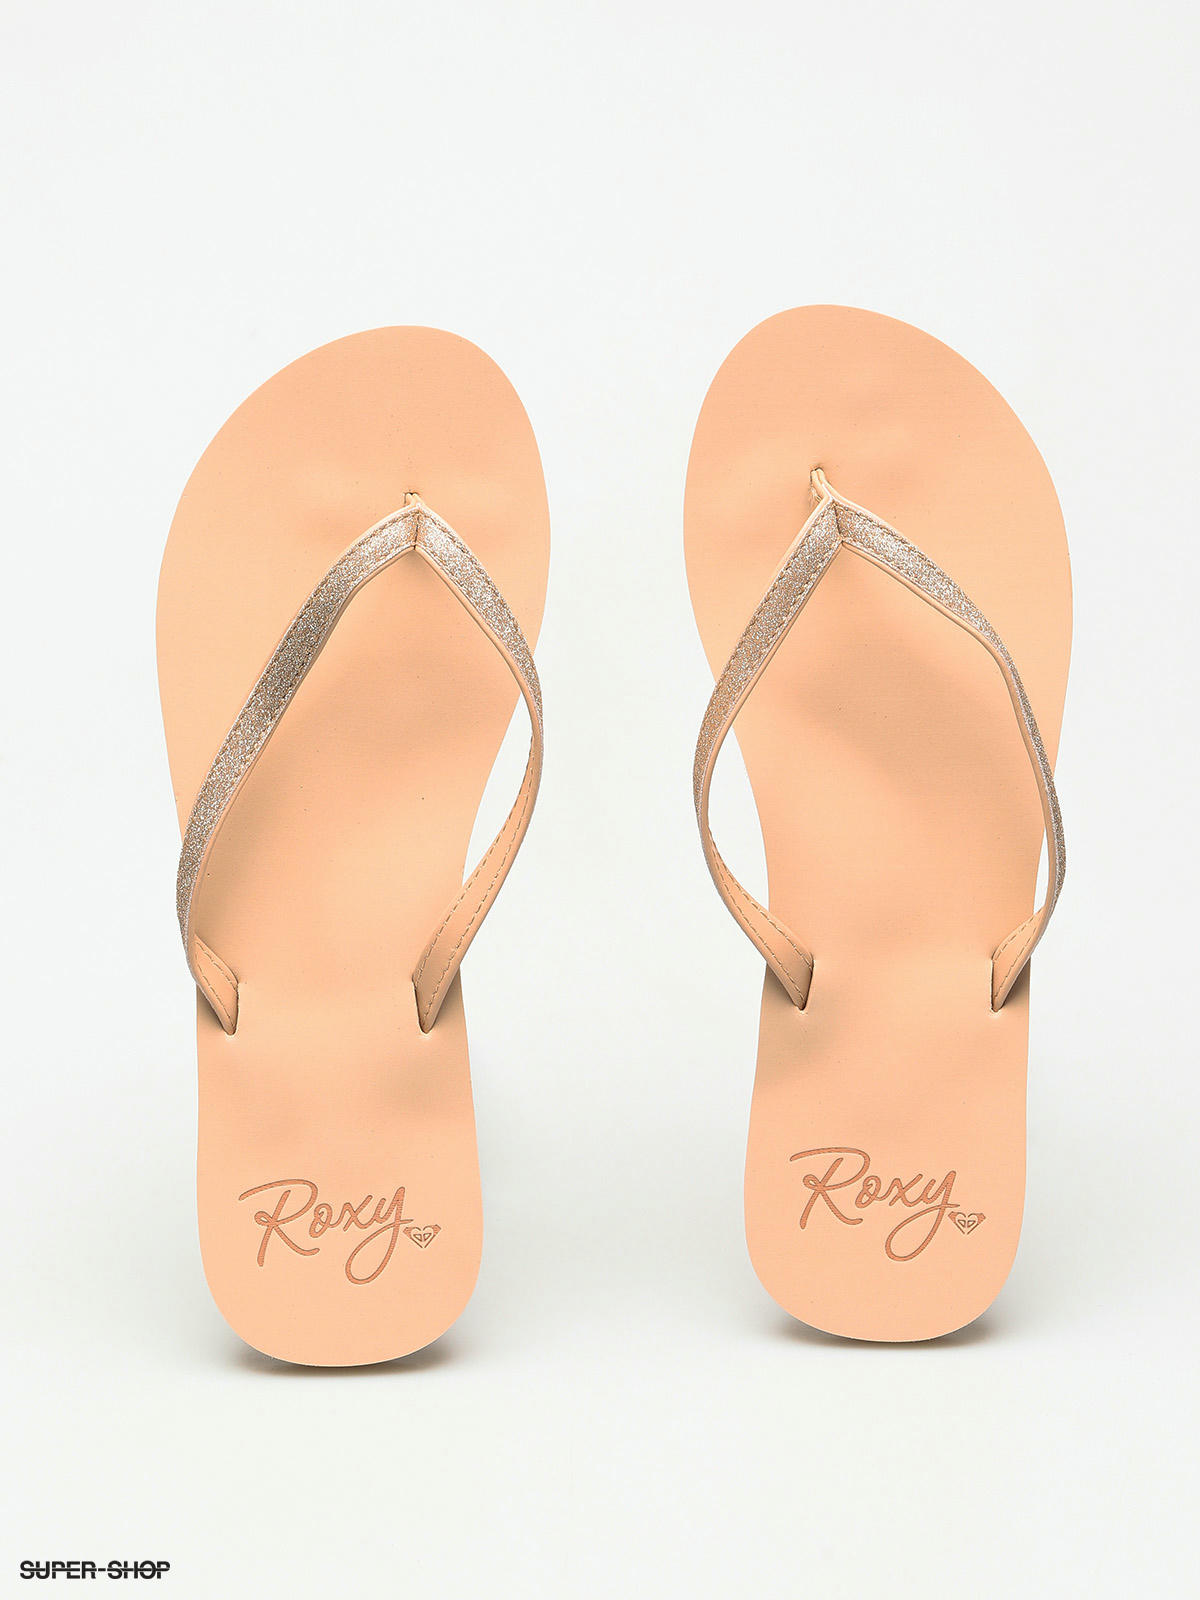 roxy tan flip flops